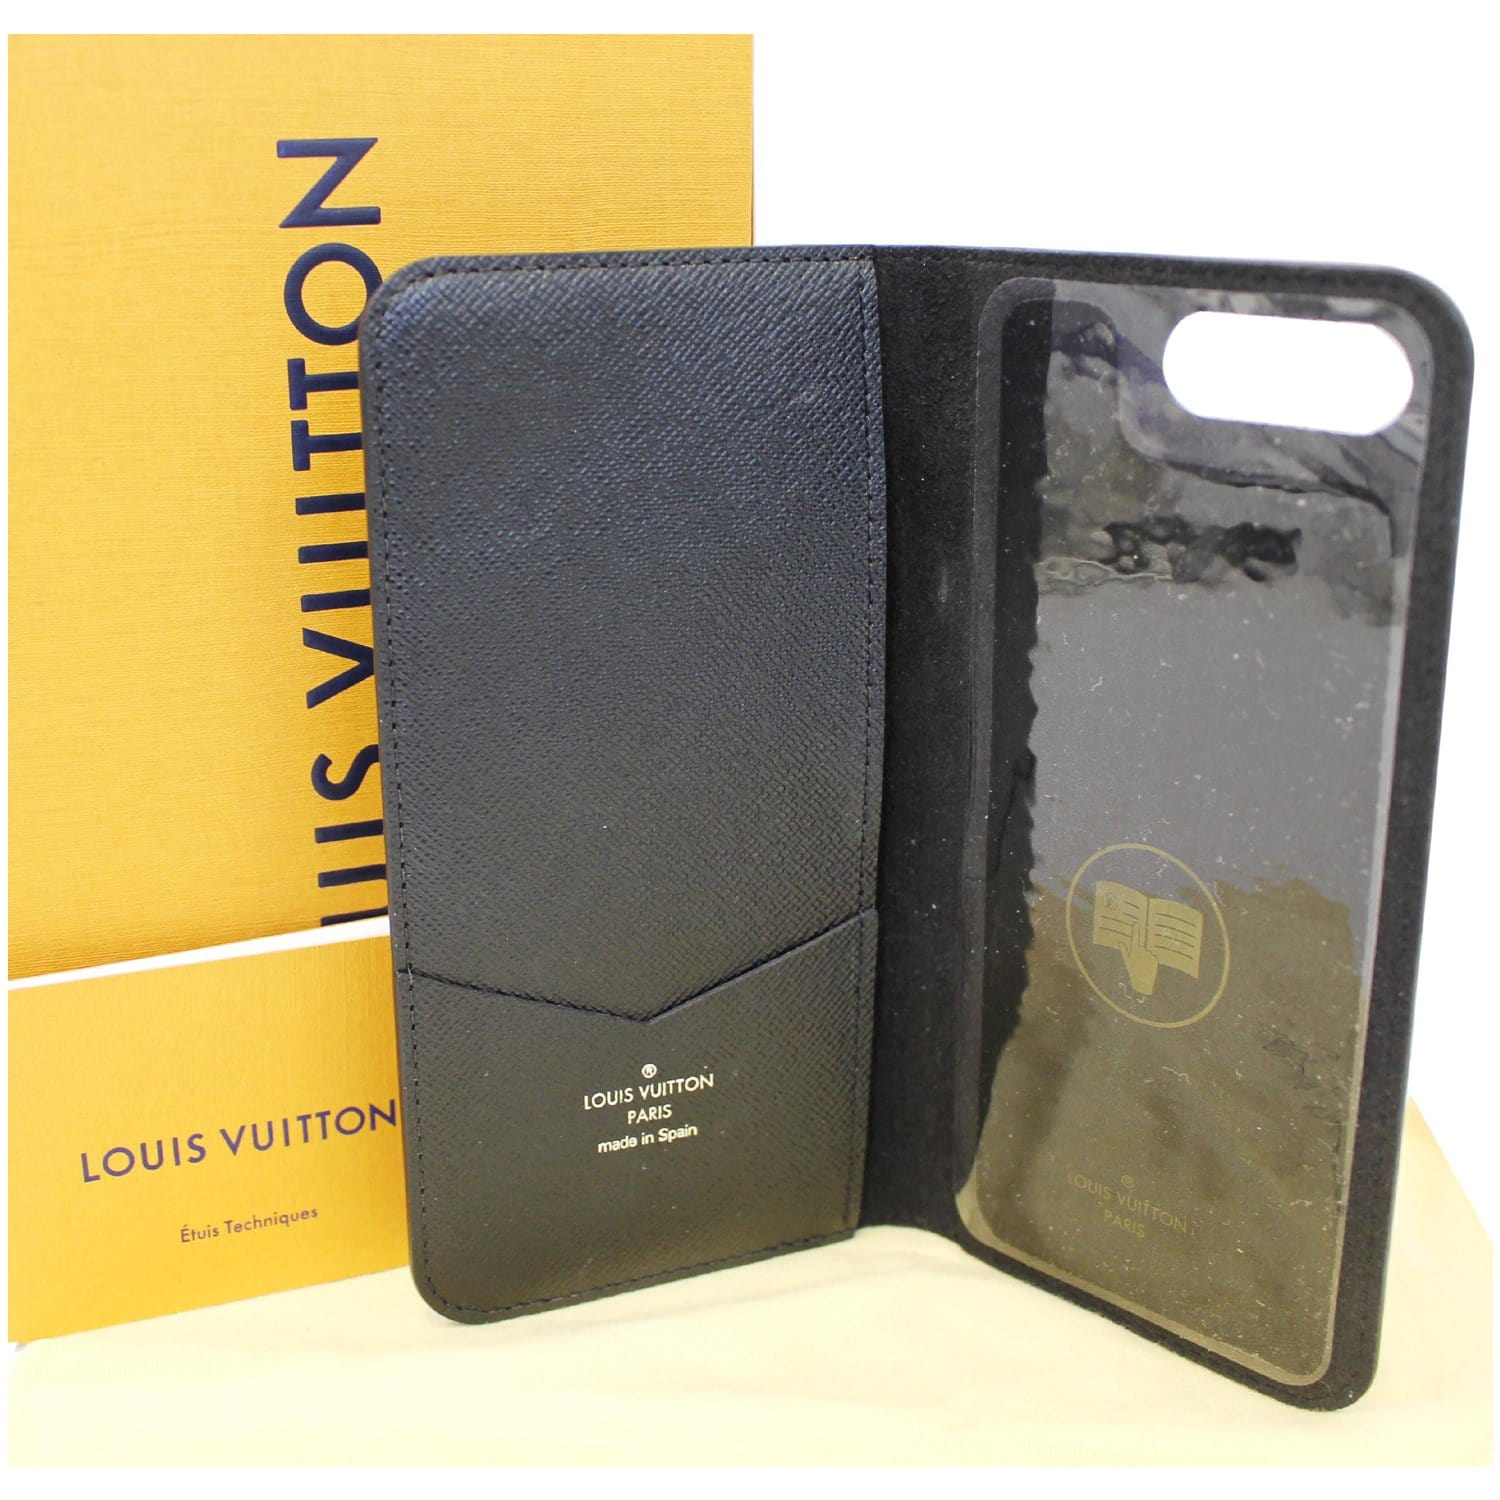 Black Louis Vuitton case